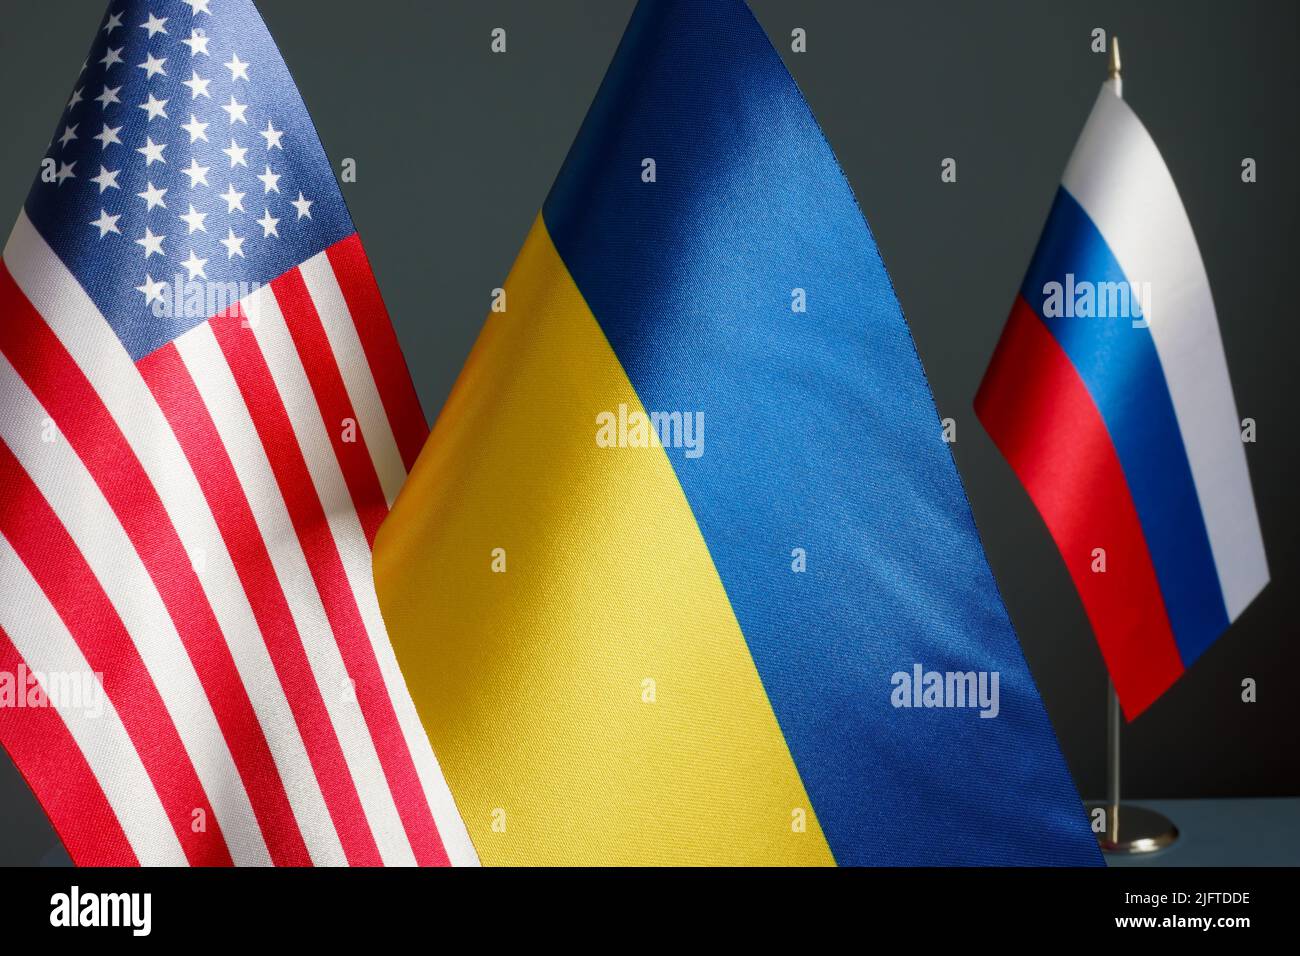 Vicino alle bandiere degli Stati Uniti e dell'Ucraina e alla bandiera della Russia. Foto Stock